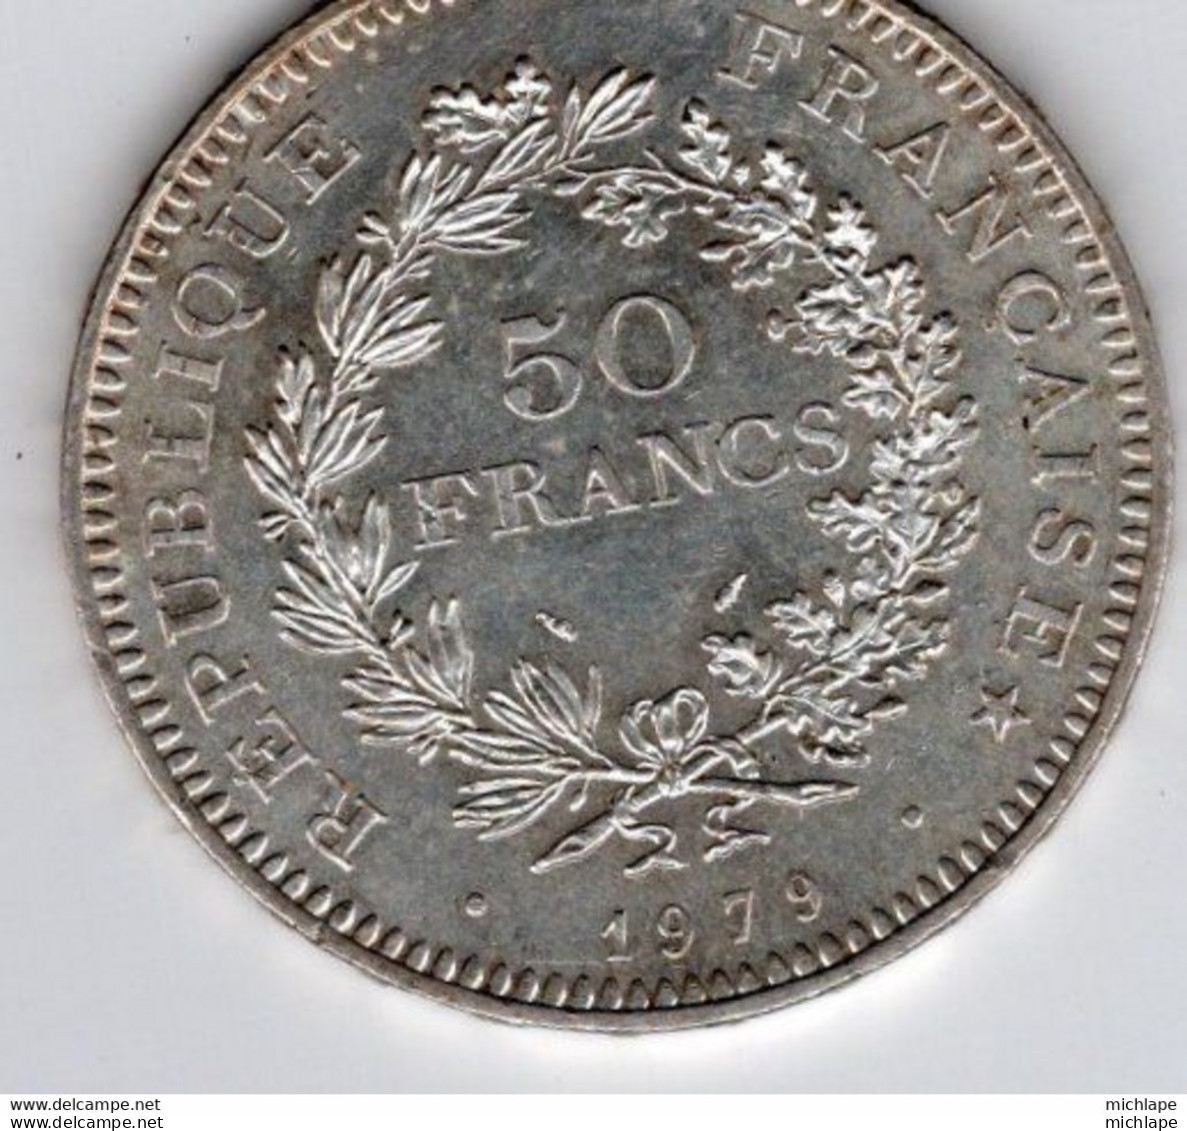 Pièce 50 Francs 1979     En Argent  Superbe - 50 Francs